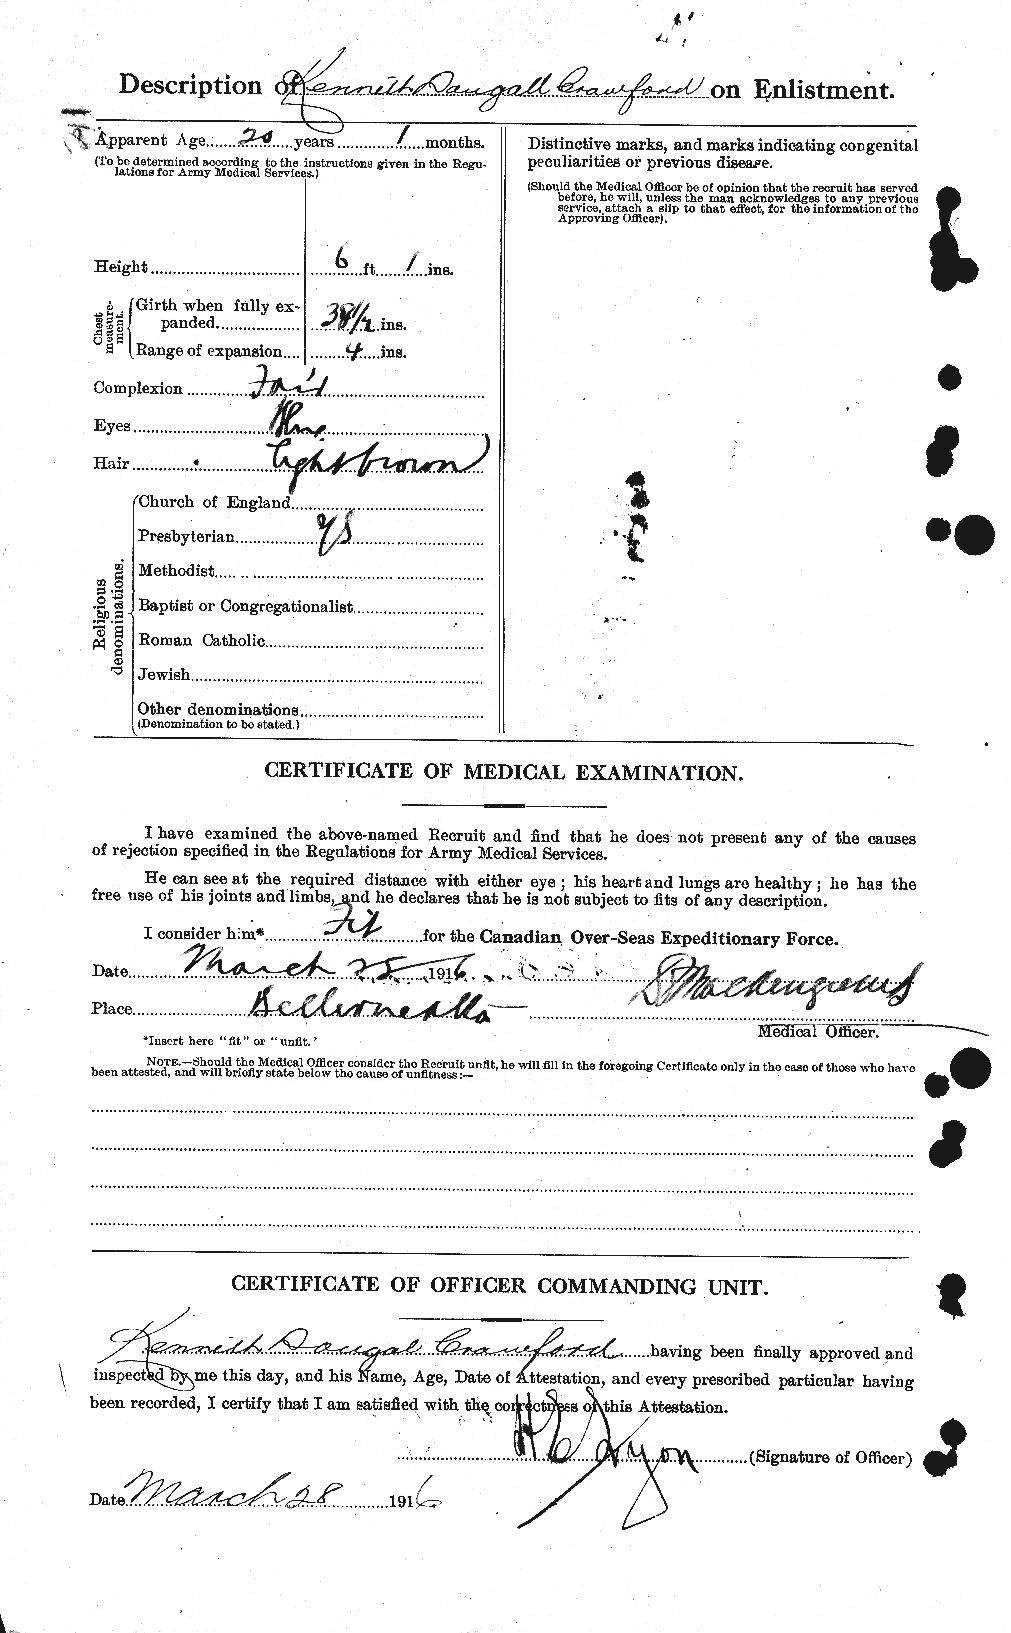 Dossiers du Personnel de la Première Guerre mondiale - CEC 061804b